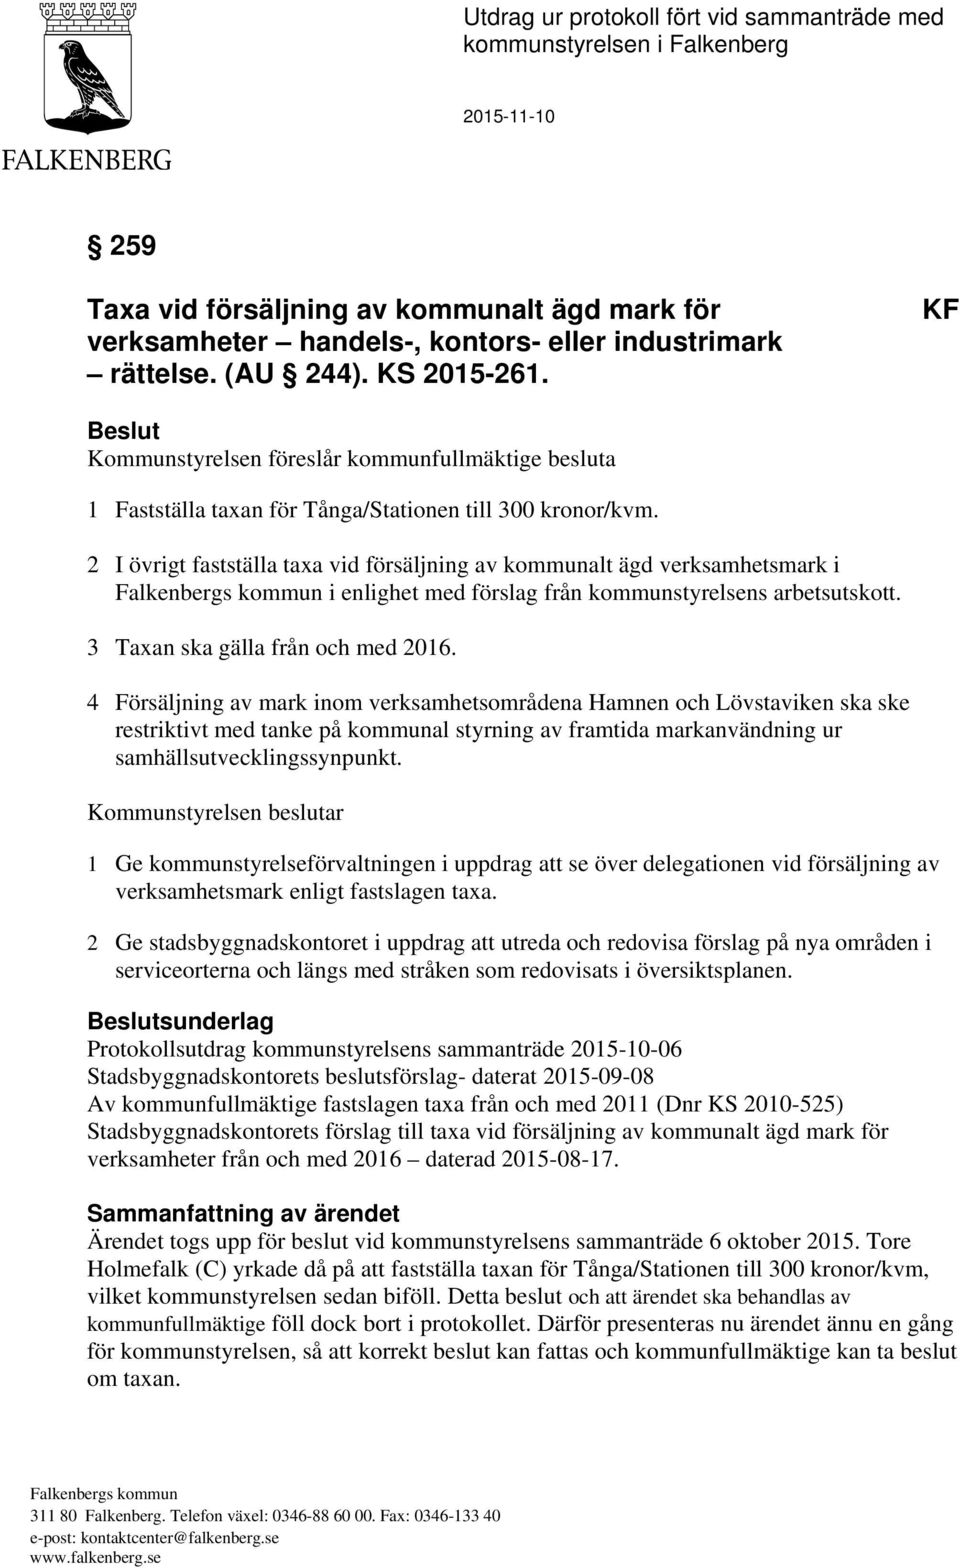 2 I övrigt fastställa taxa vid försäljning av kommunalt ägd verksamhetsmark i Falkenbergs kommun i enlighet med förslag från kommunstyrelsens arbetsutskott. 3 Taxan ska gälla från och med 2016.